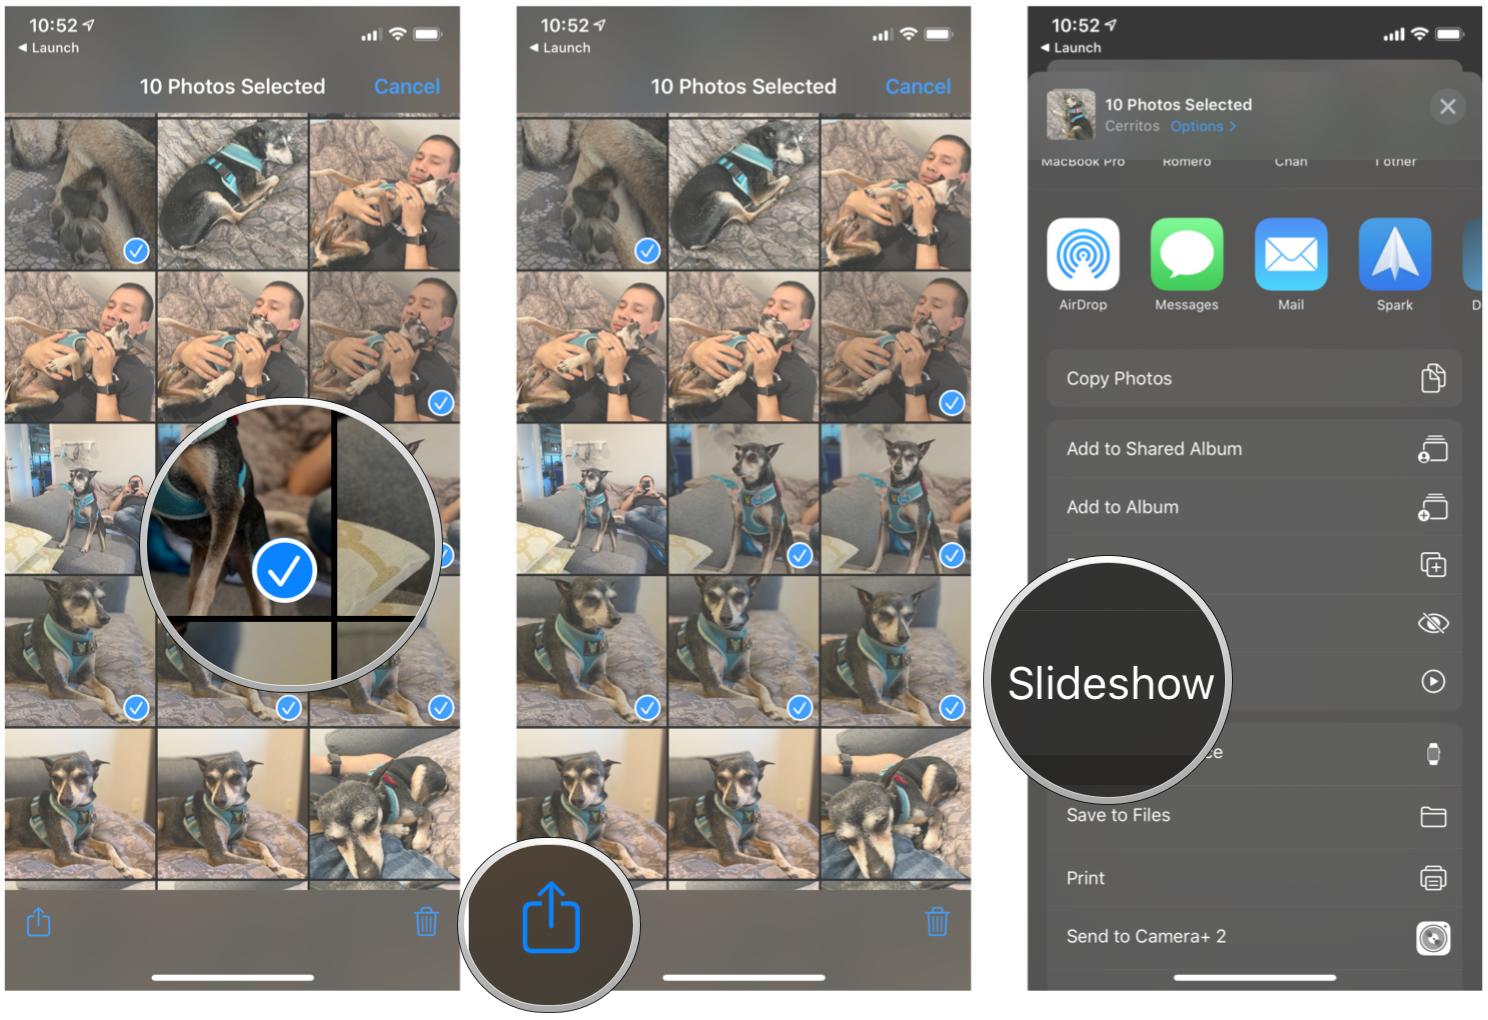 Начните слайд-шоу с избранных фотографий в приложении «Фото» на iPhone и iPad, показывая шаги: коснитесь фотографий, которые хотите использовать в слайд-шоу, чтобы они были отмечены синей галочкой, затем коснитесь «Поделиться», затем выберите «Слайд-шоу».